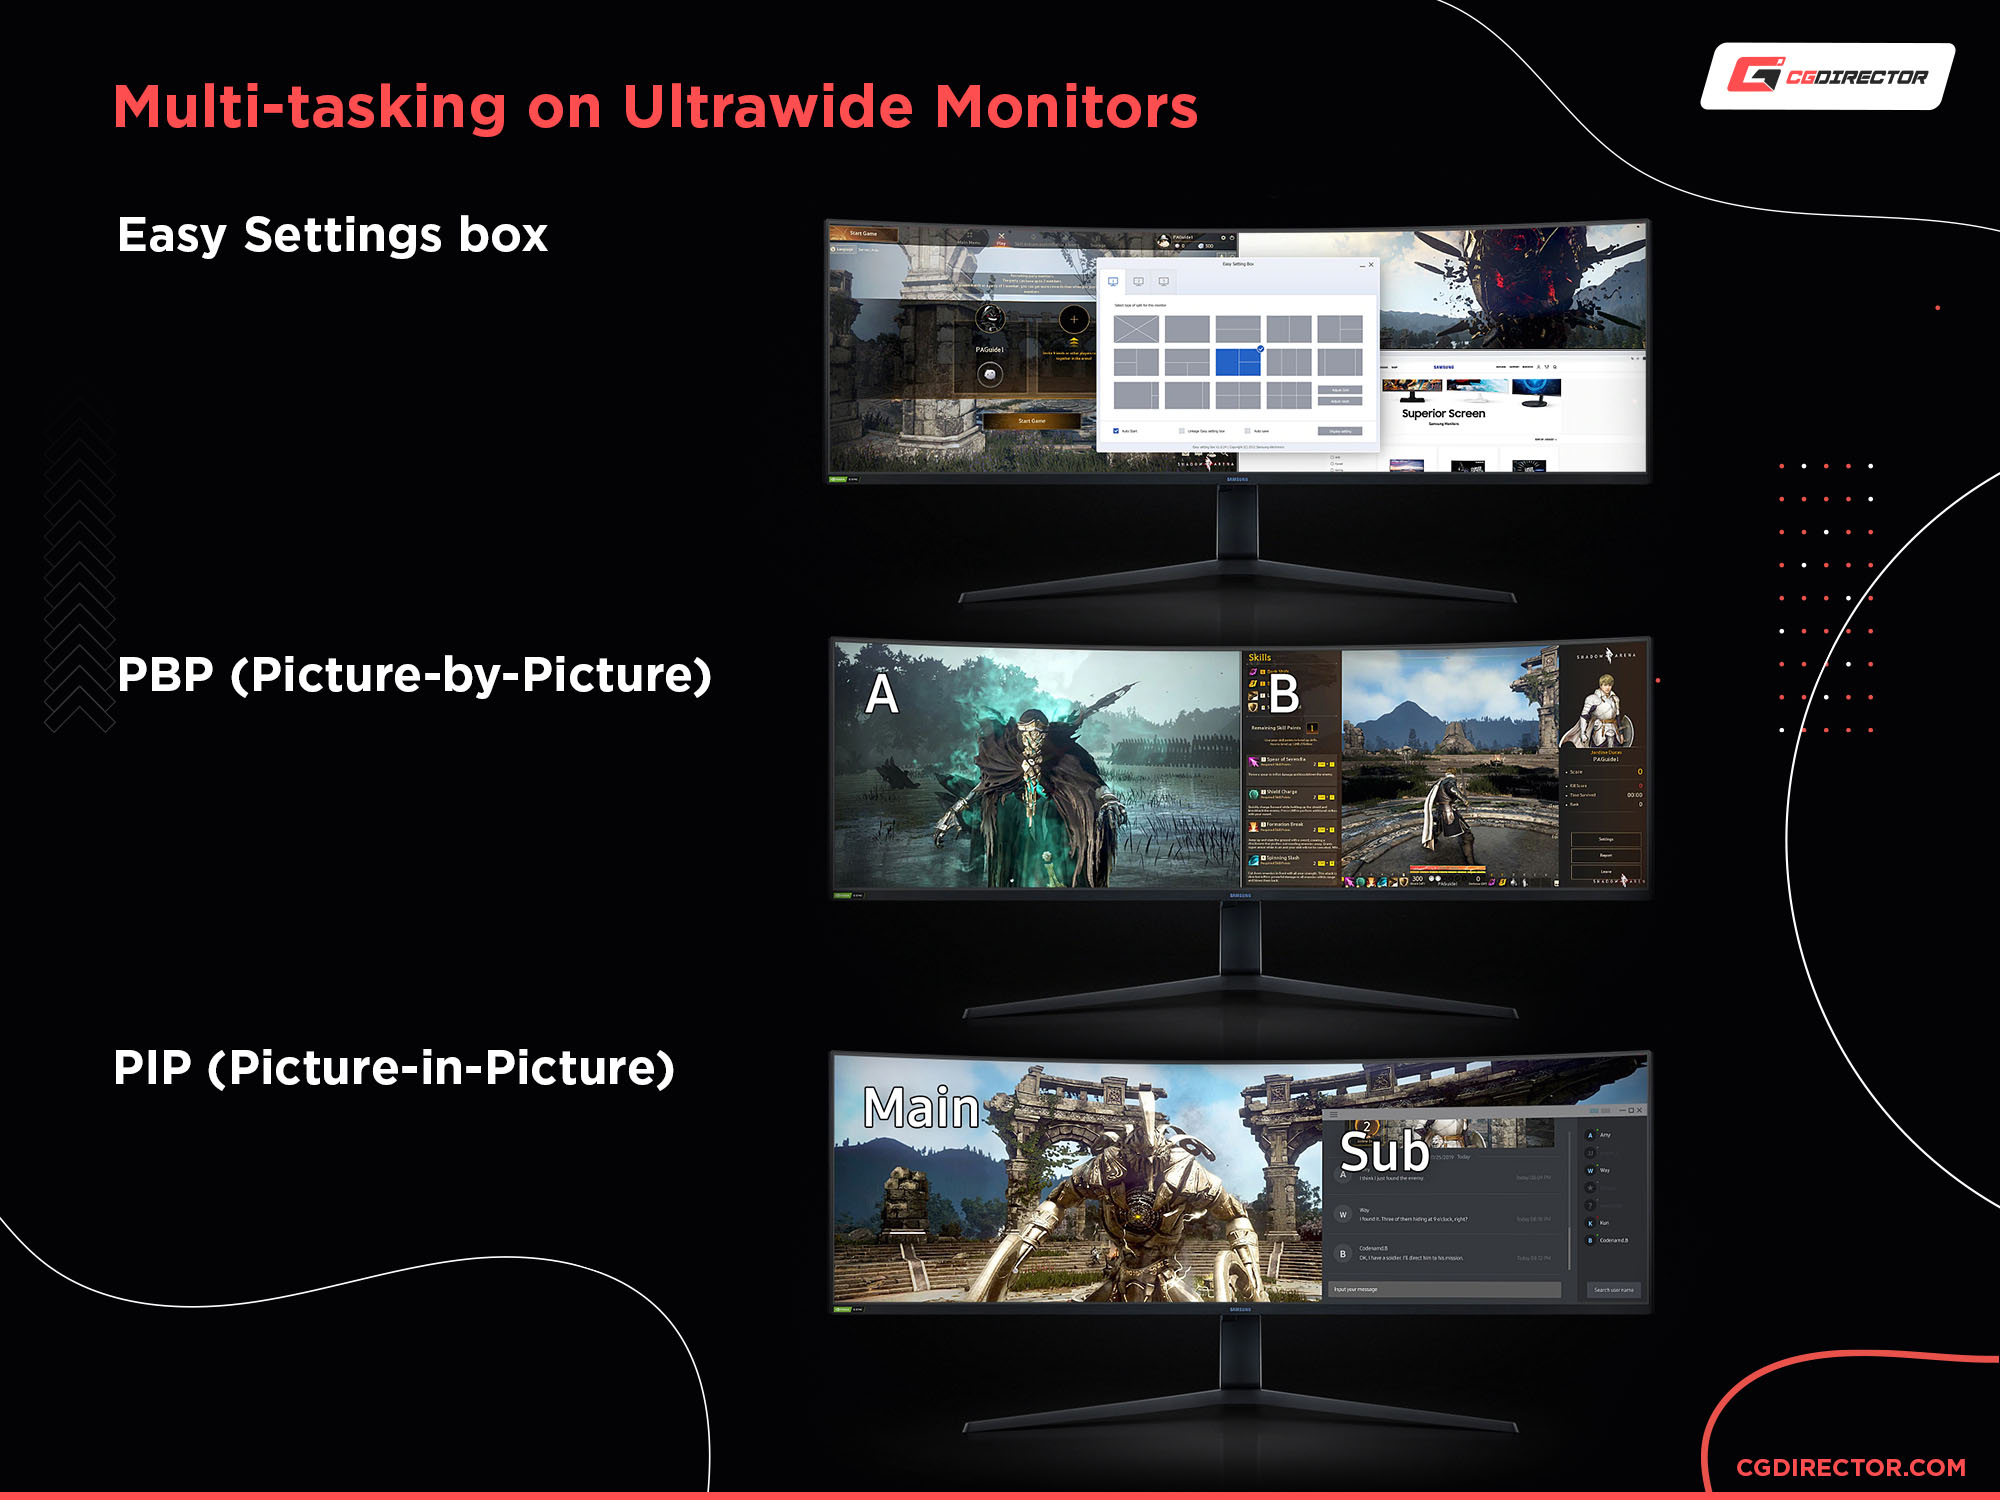 Multi-tasking on ultrawide monitors